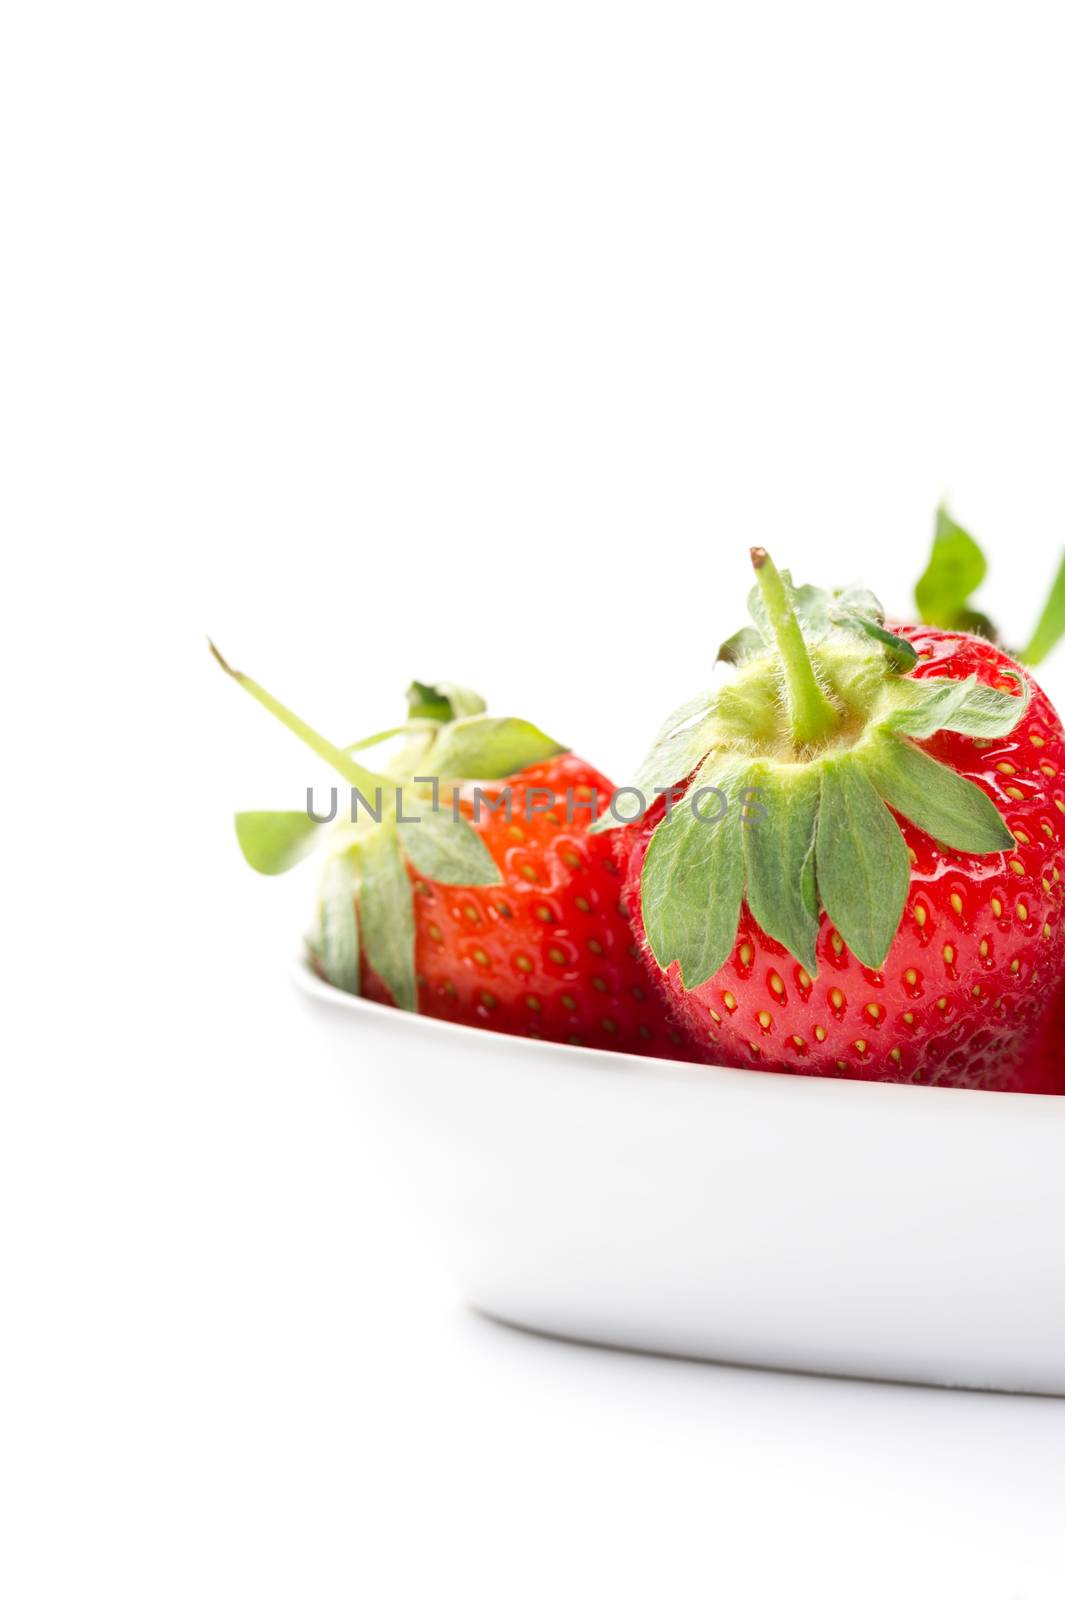 Juicy ripe red home grown strawberries in a bowl by MOELLERTHOMSEN